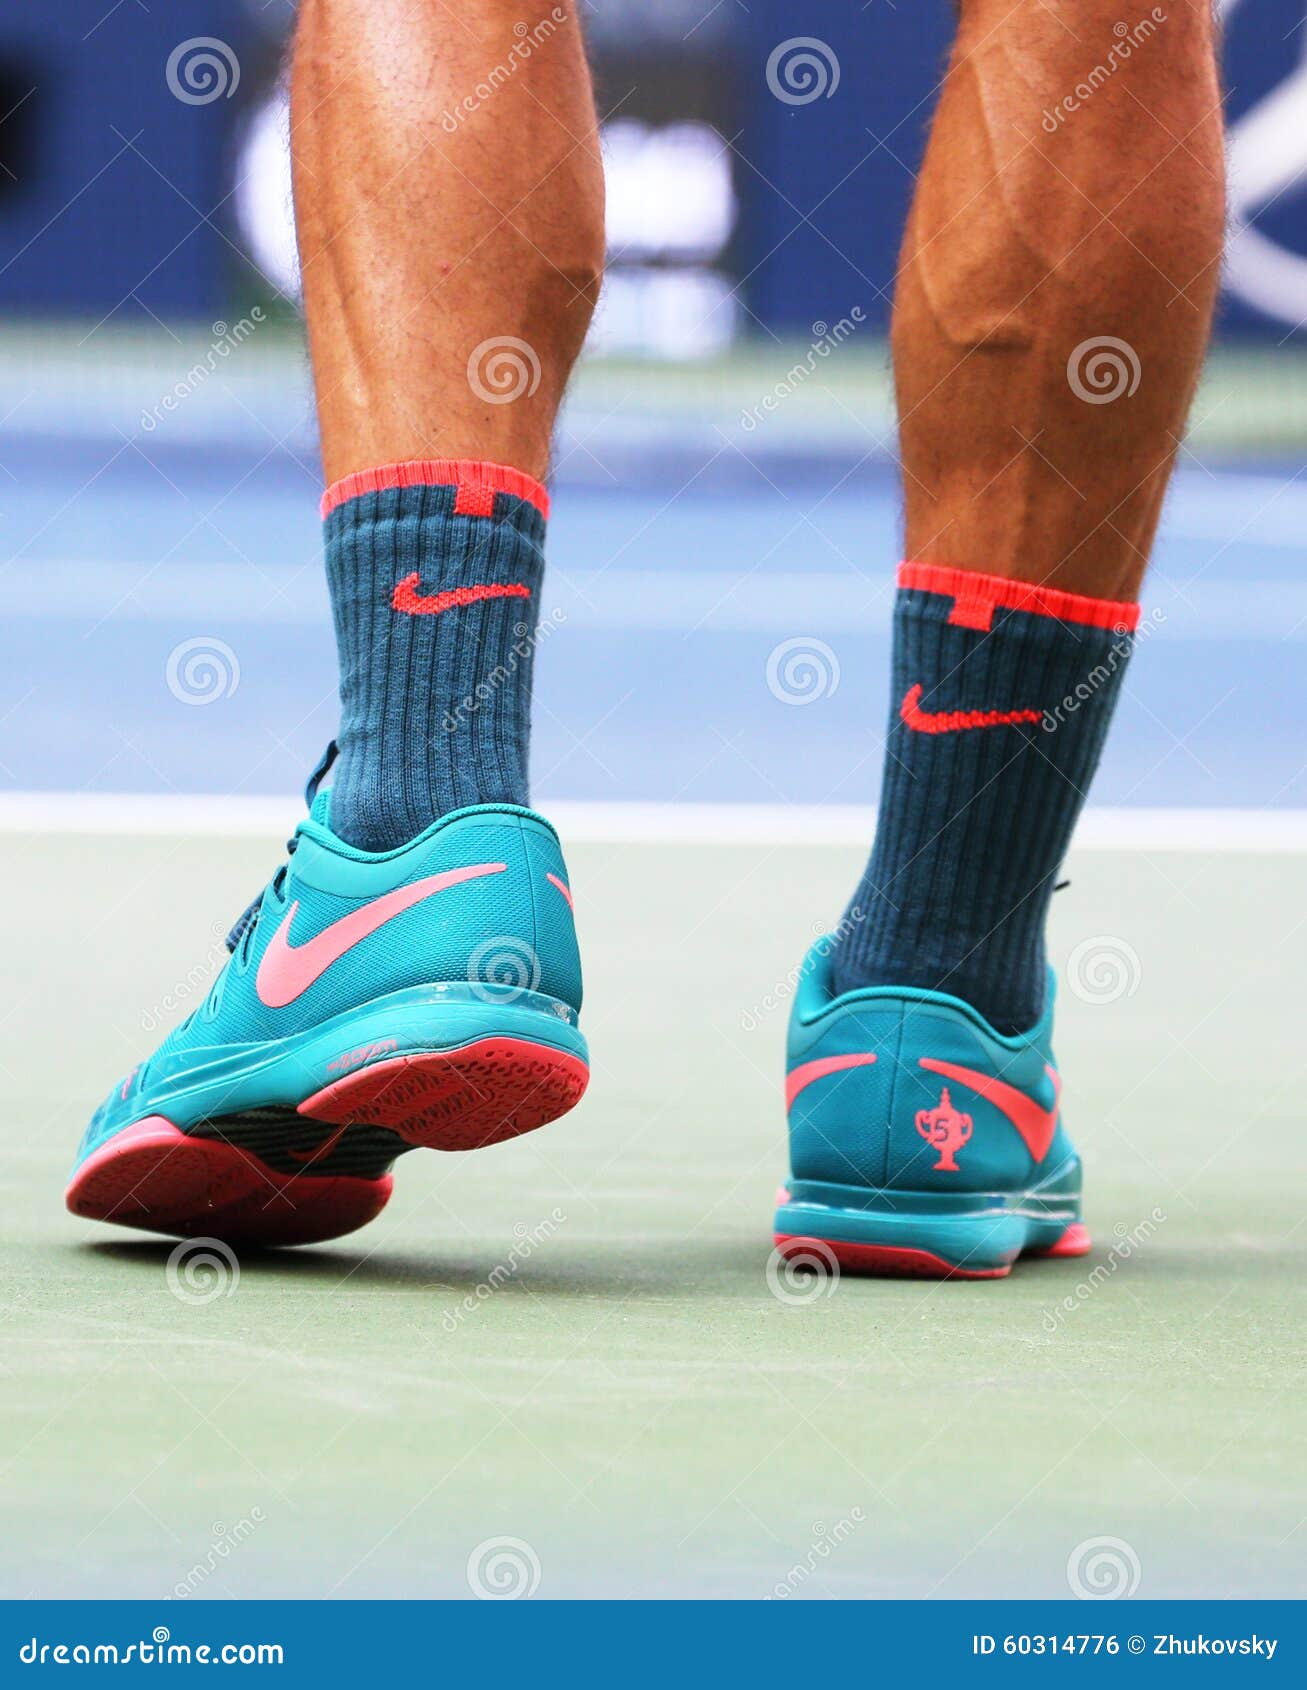 scarpe da tennis nadal